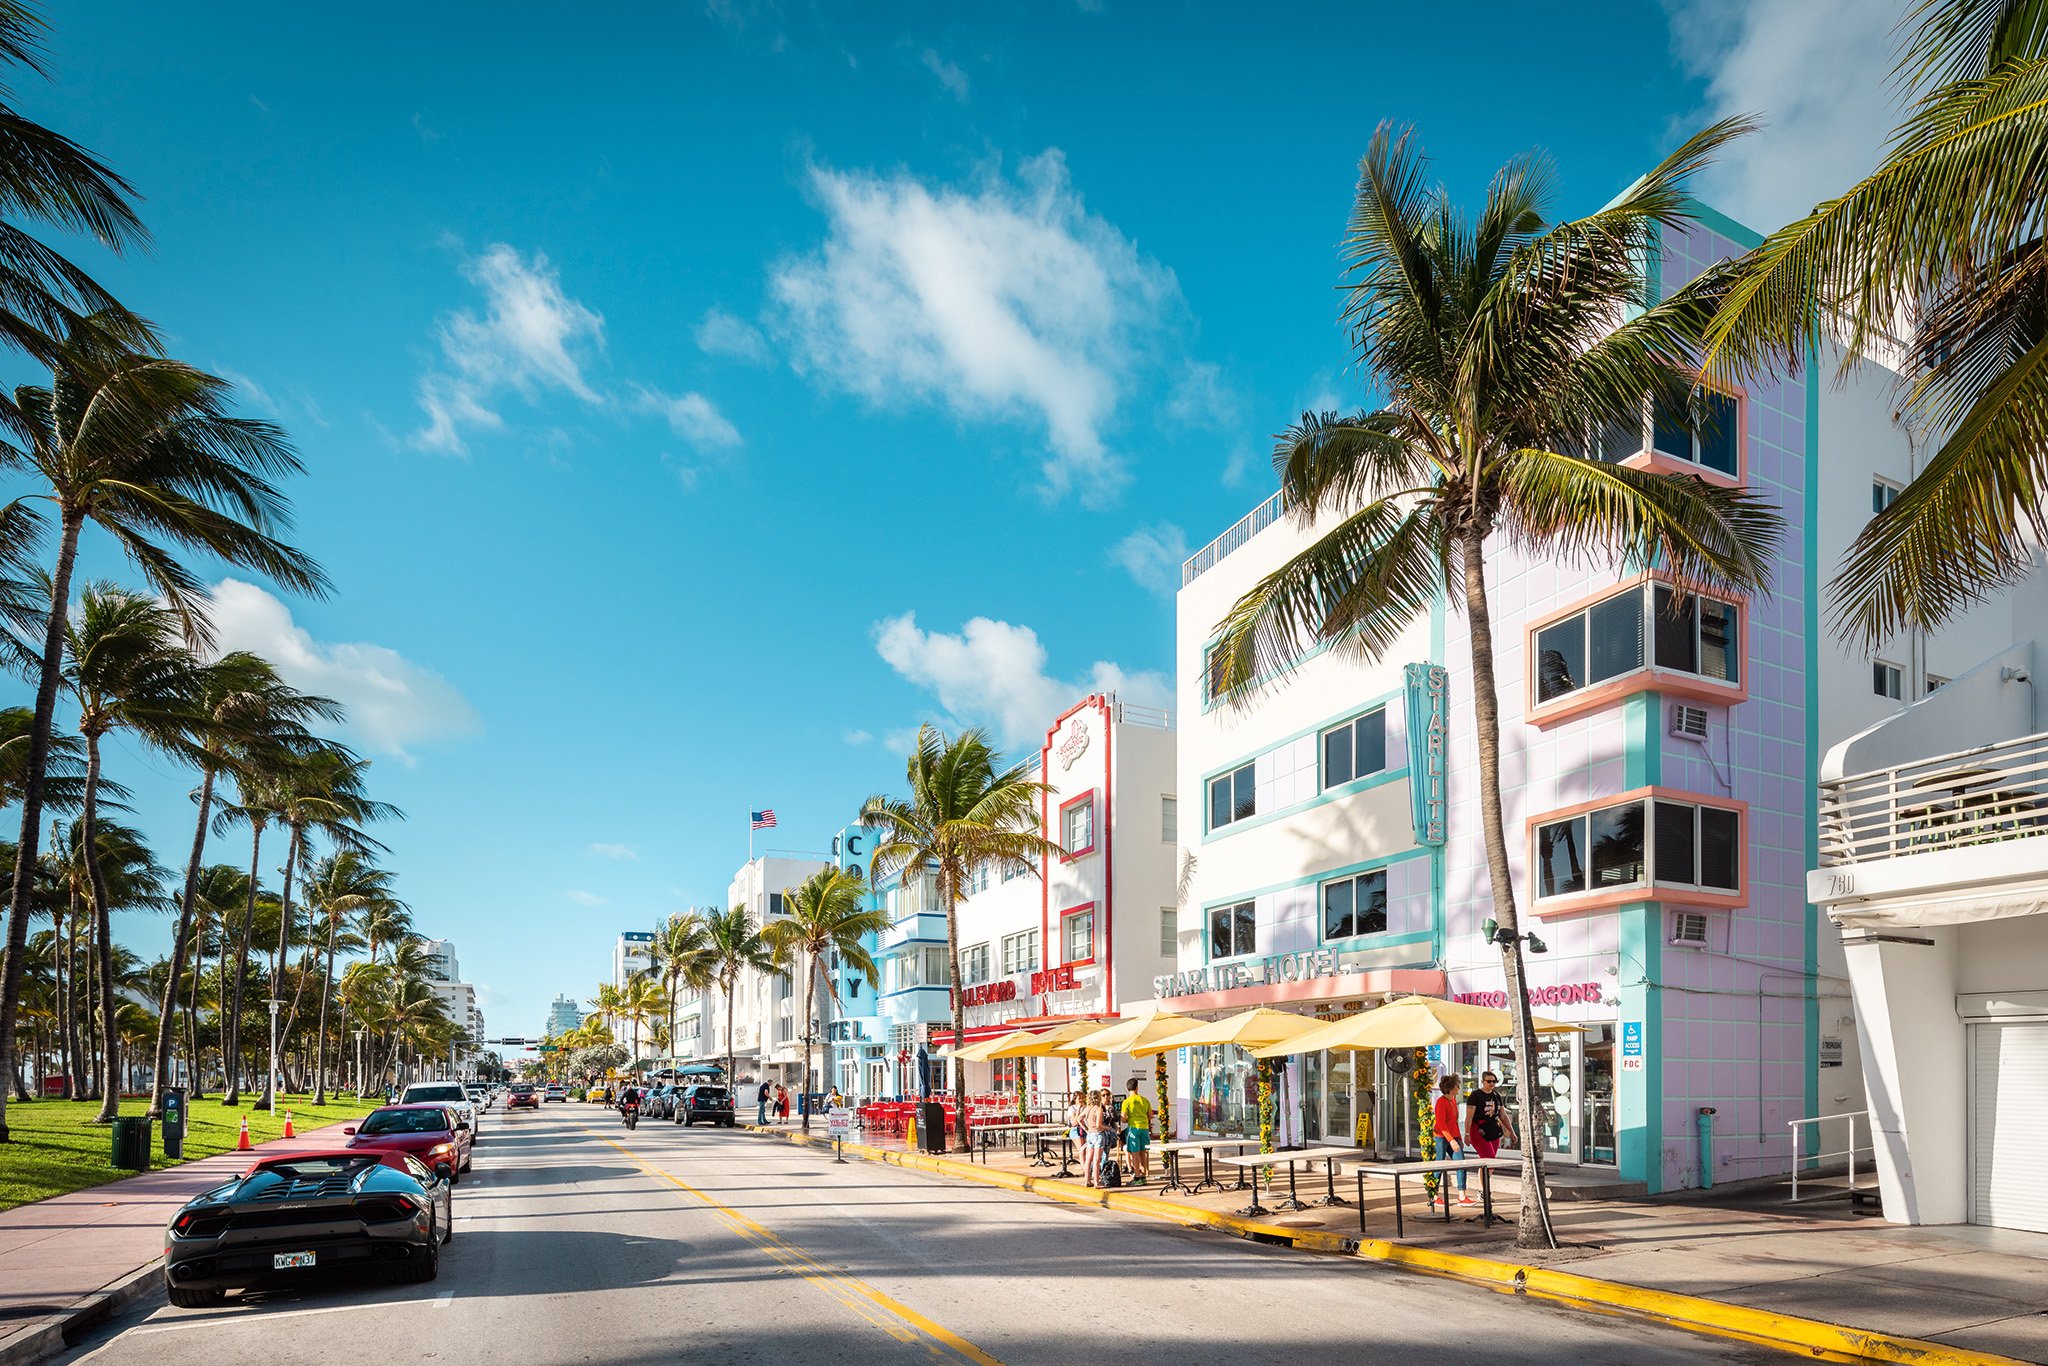 Miami mit seinen Art-déco-Gebäuden und seiner berühmten Flaniermeile Ocean Drive gehört 
zu den beliebtesten Reisezielen 
in den USA.